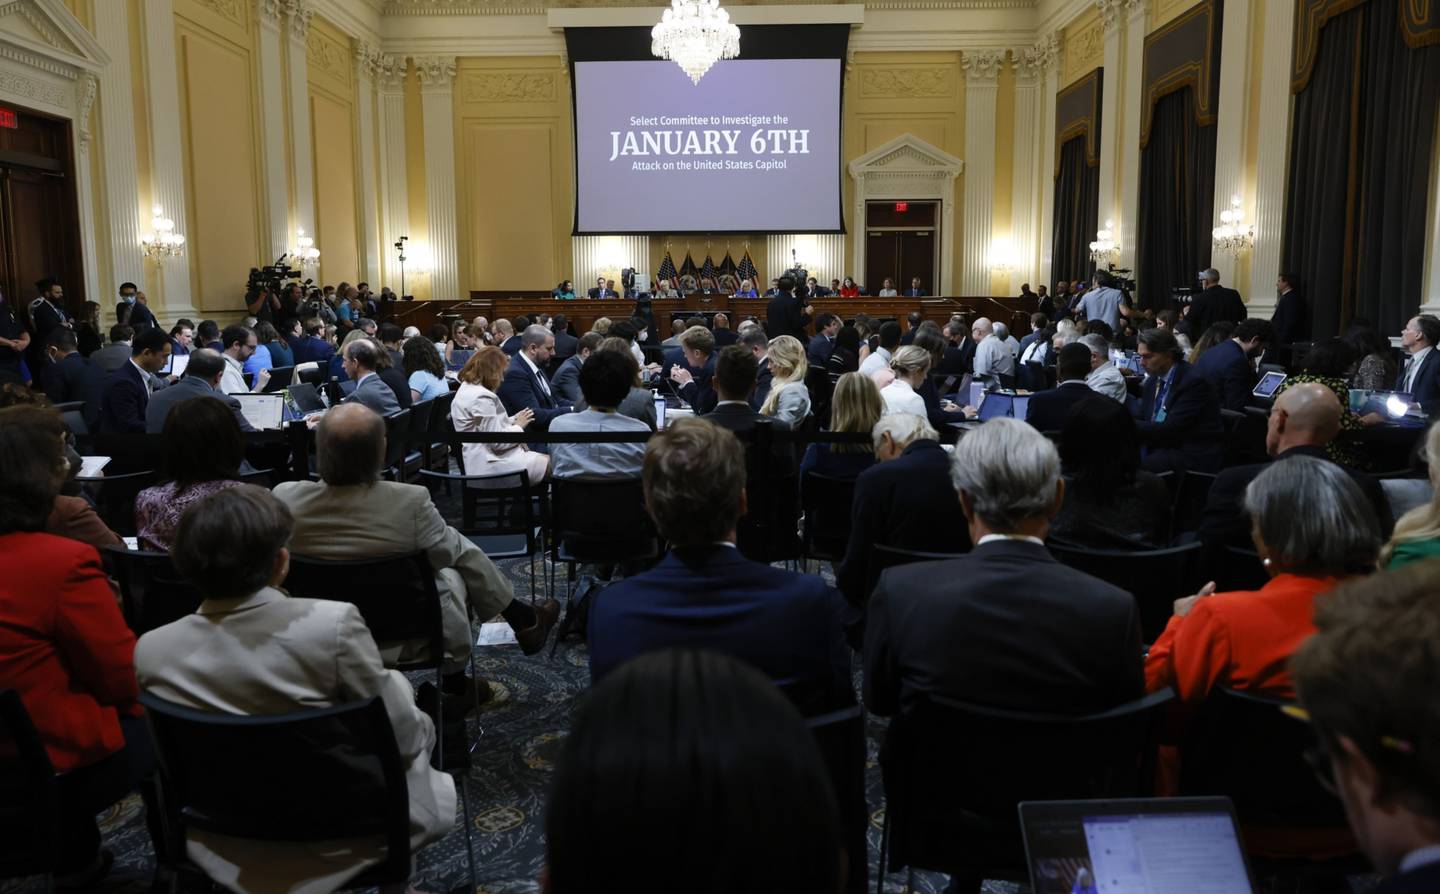 Imagen de la audiencia sobre el asalto al Capitolio de EE.UU. el 6 de enero de 2021